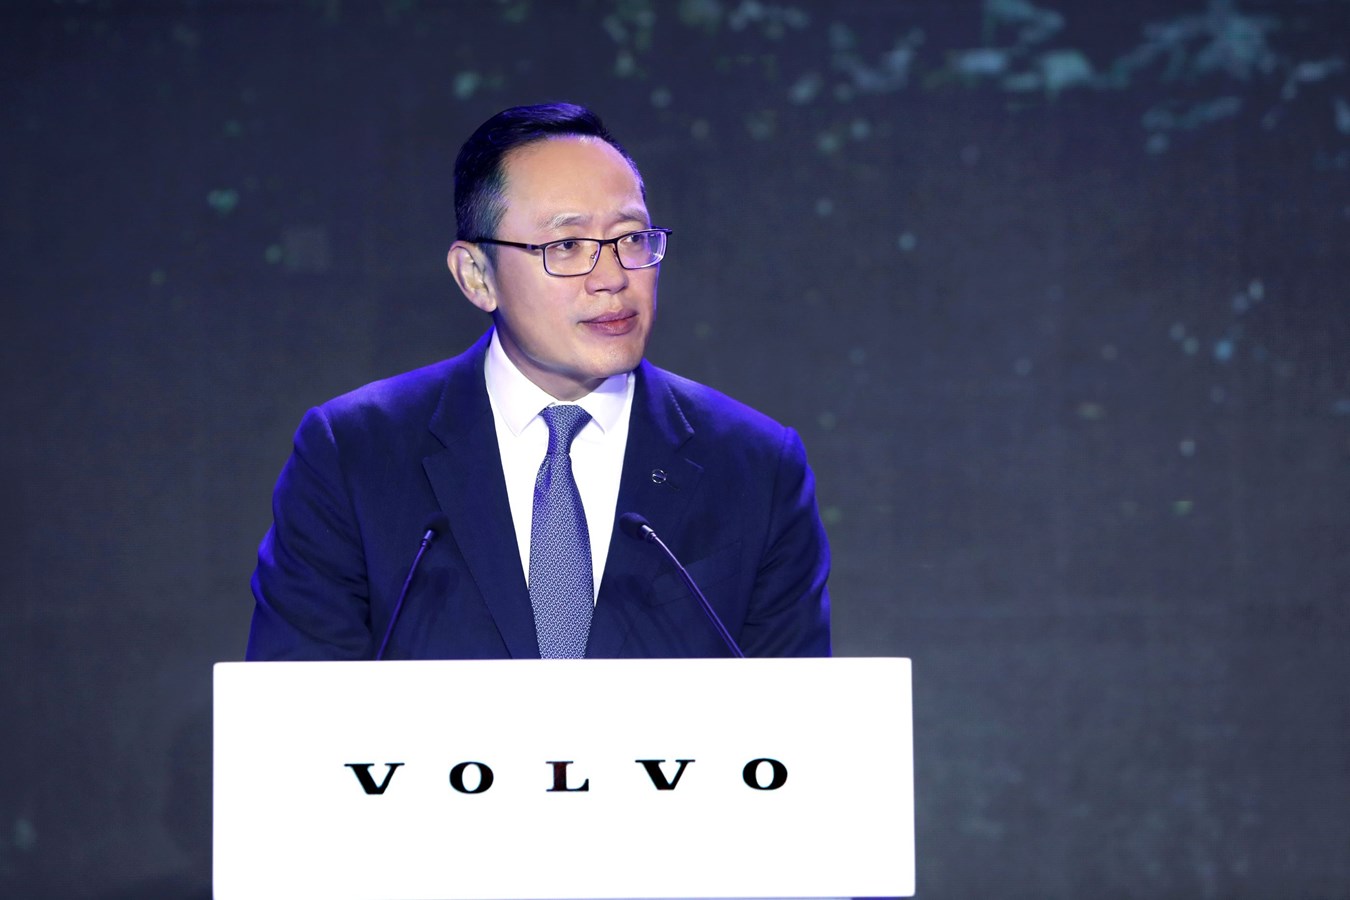 沃尔沃汽车集团全球高级副总裁、沃尔沃汽车亚太区总裁兼CEO袁小林致辞